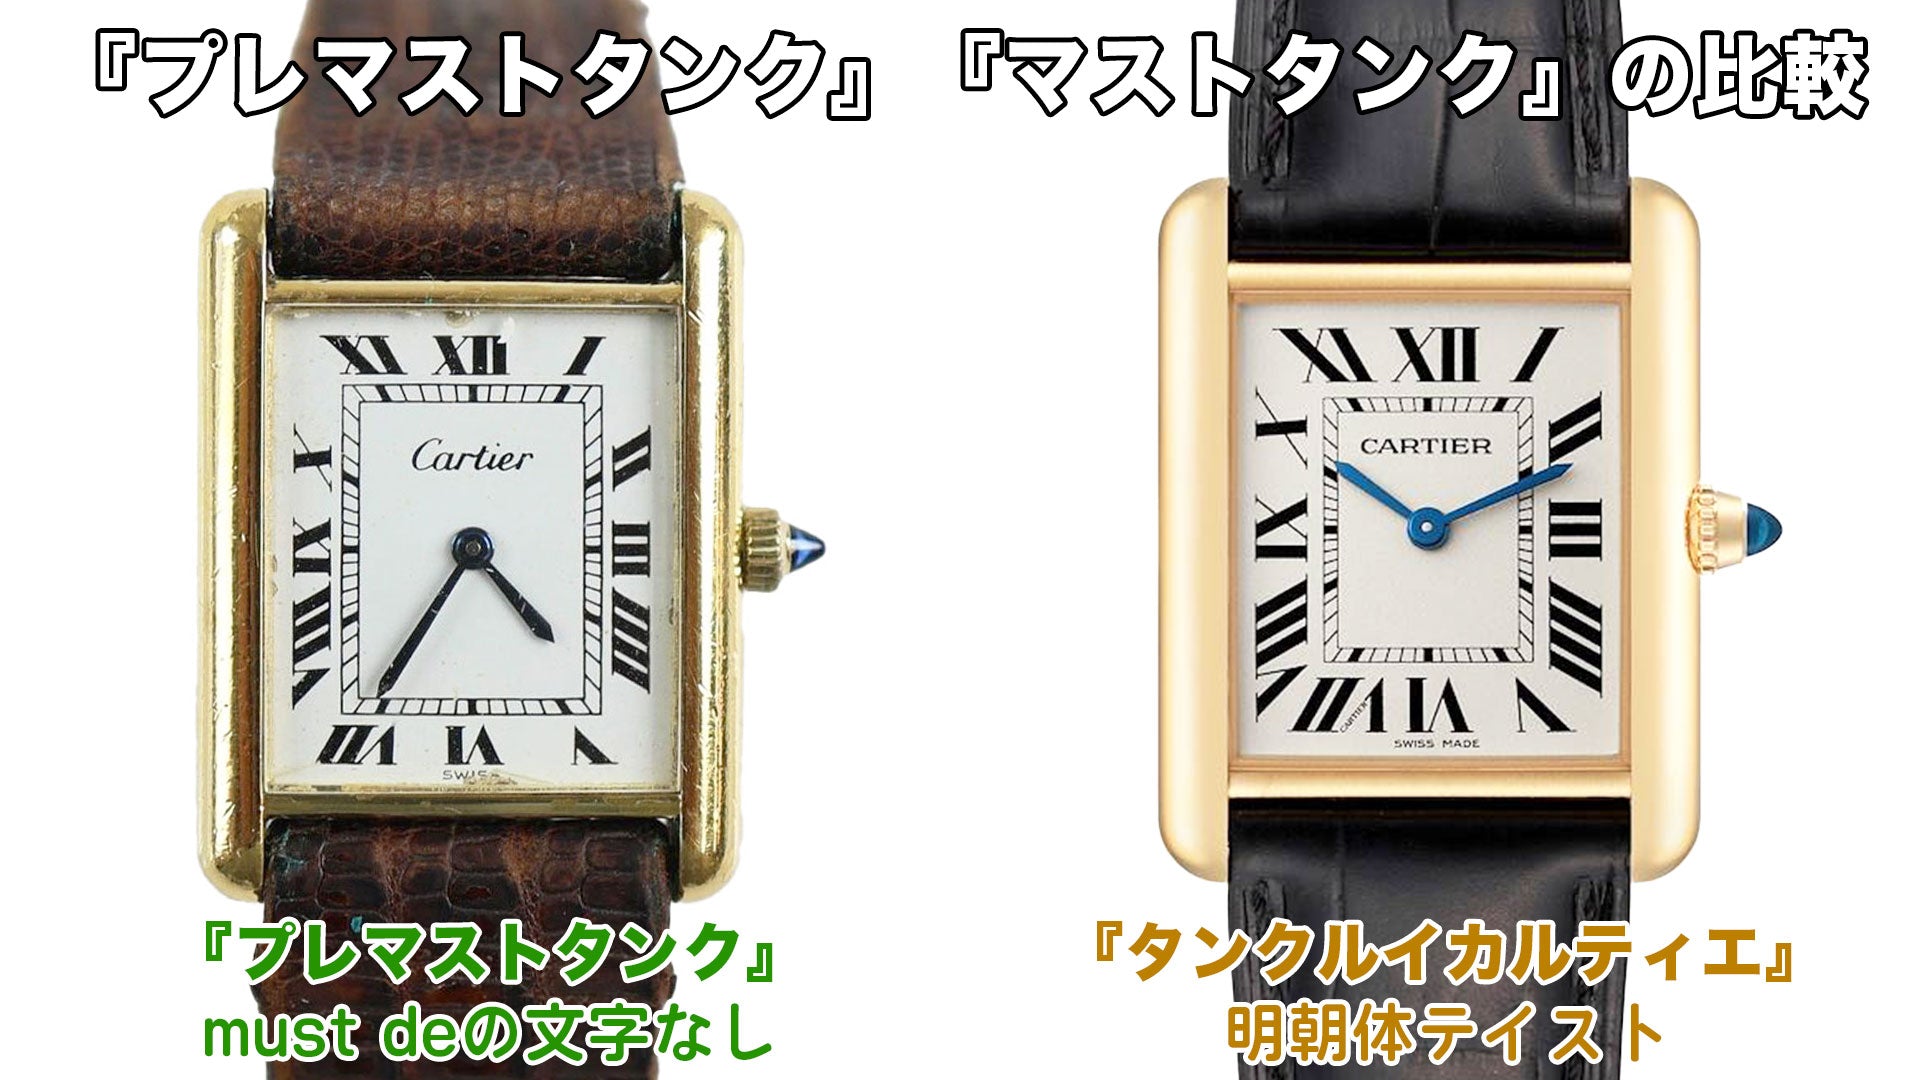 カルティエの腕時計『プレマストタンク』『タンクルイカルティエ』の比較